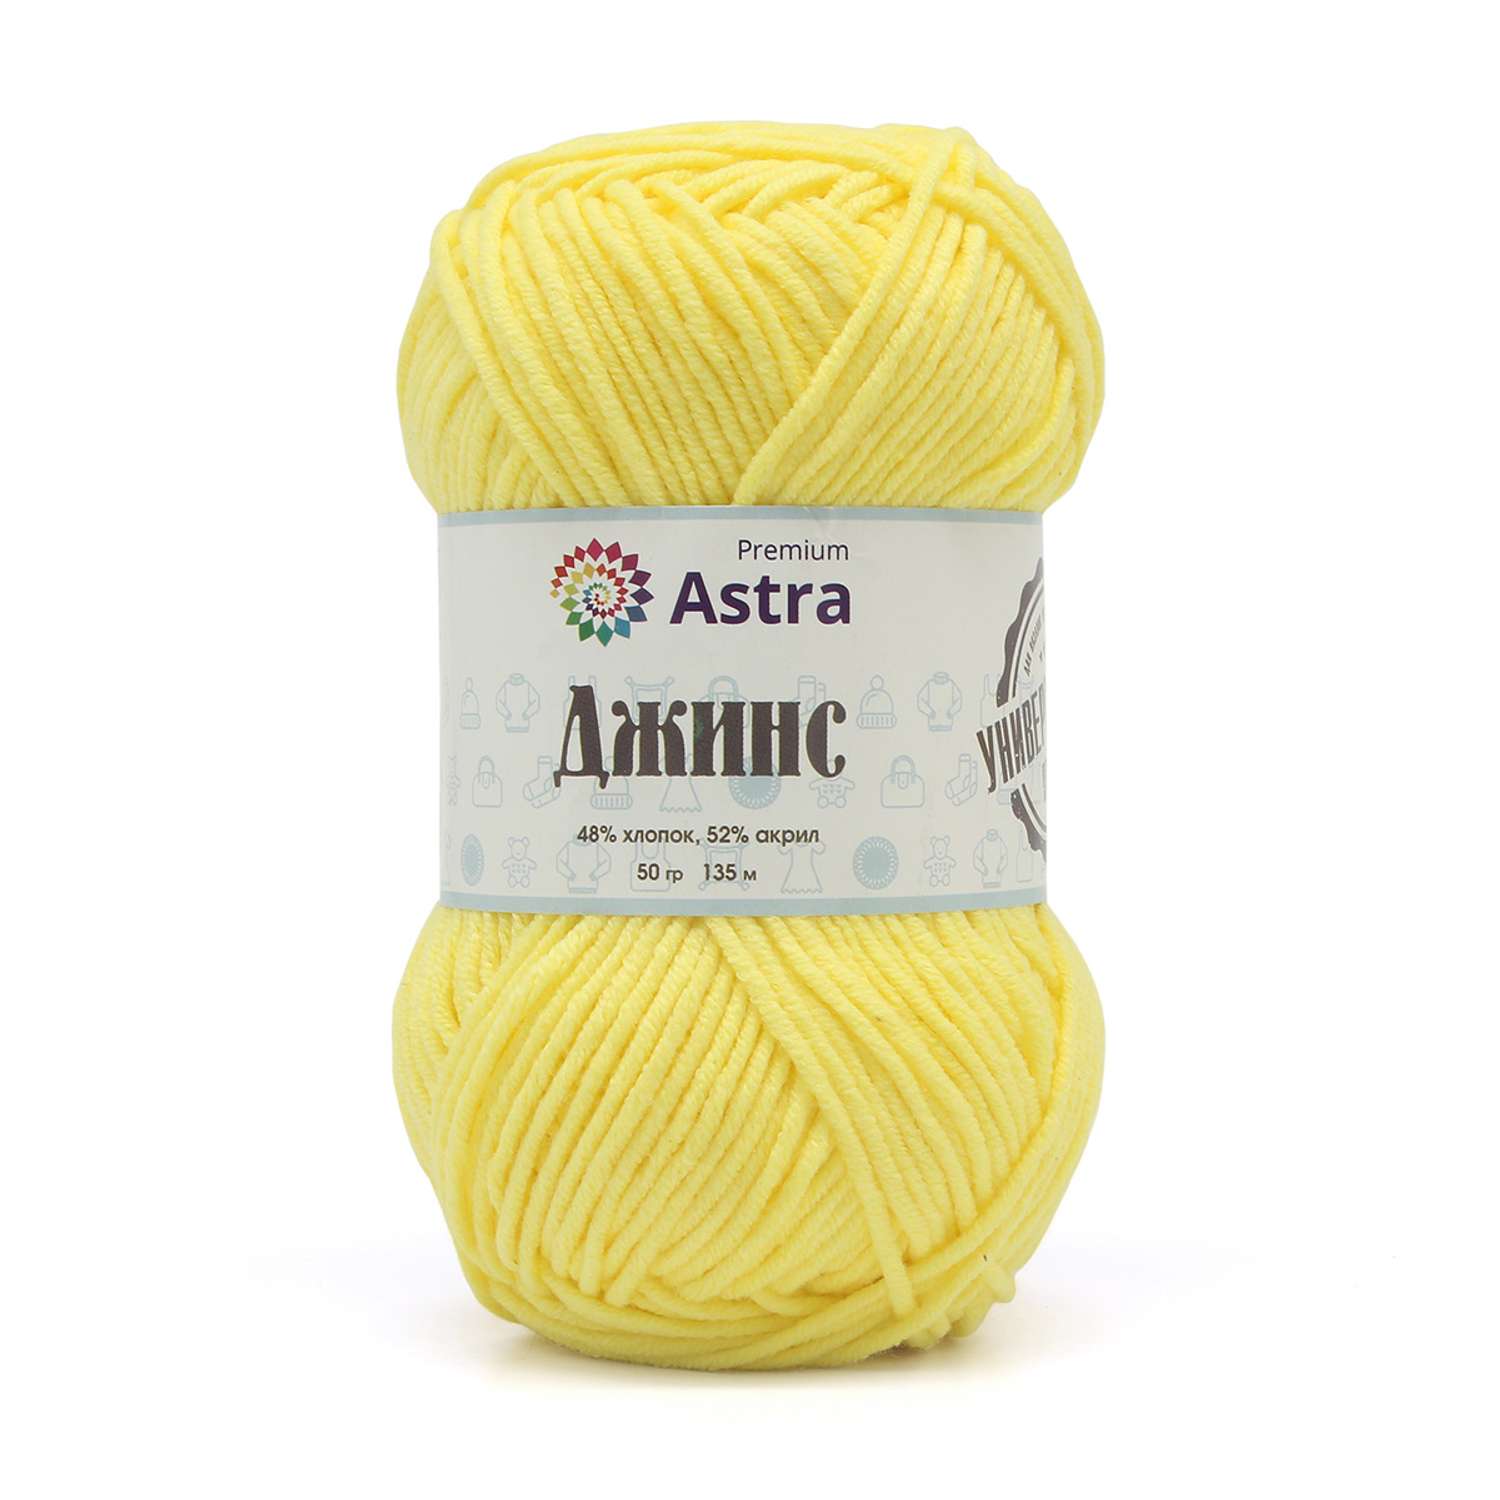 Пряжа для вязания Astra Premium джинс для повседневной одежды акрил хлопок 50 гр 135 м 310 желтый 4 мотка - фото 9